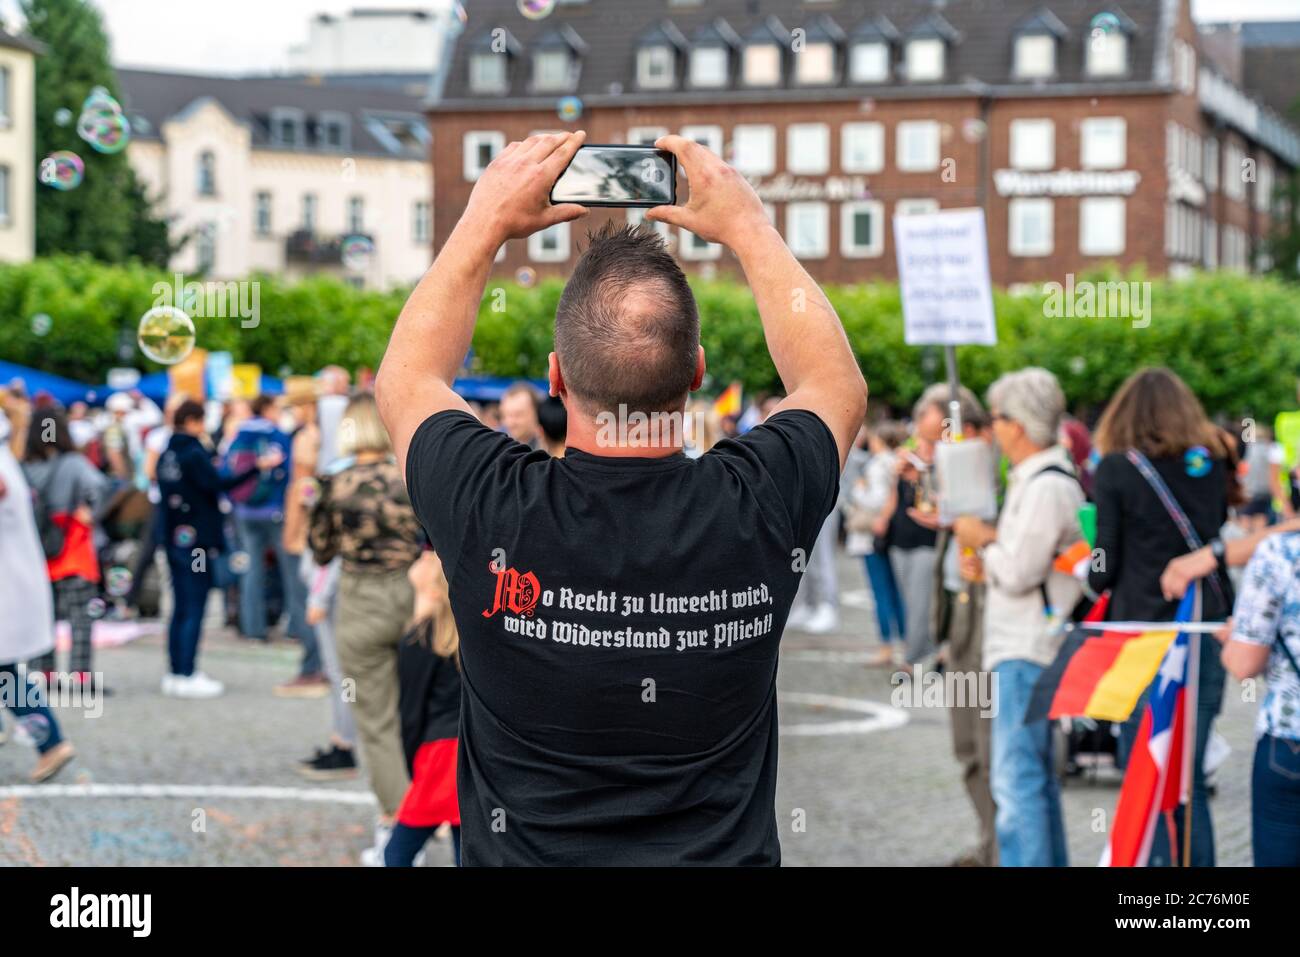 Participants à une manifestation contre les mesures Corona, mask duty, avec slogan de la droite politique, etc., à Düsseldorf Allemagne, Banque D'Images